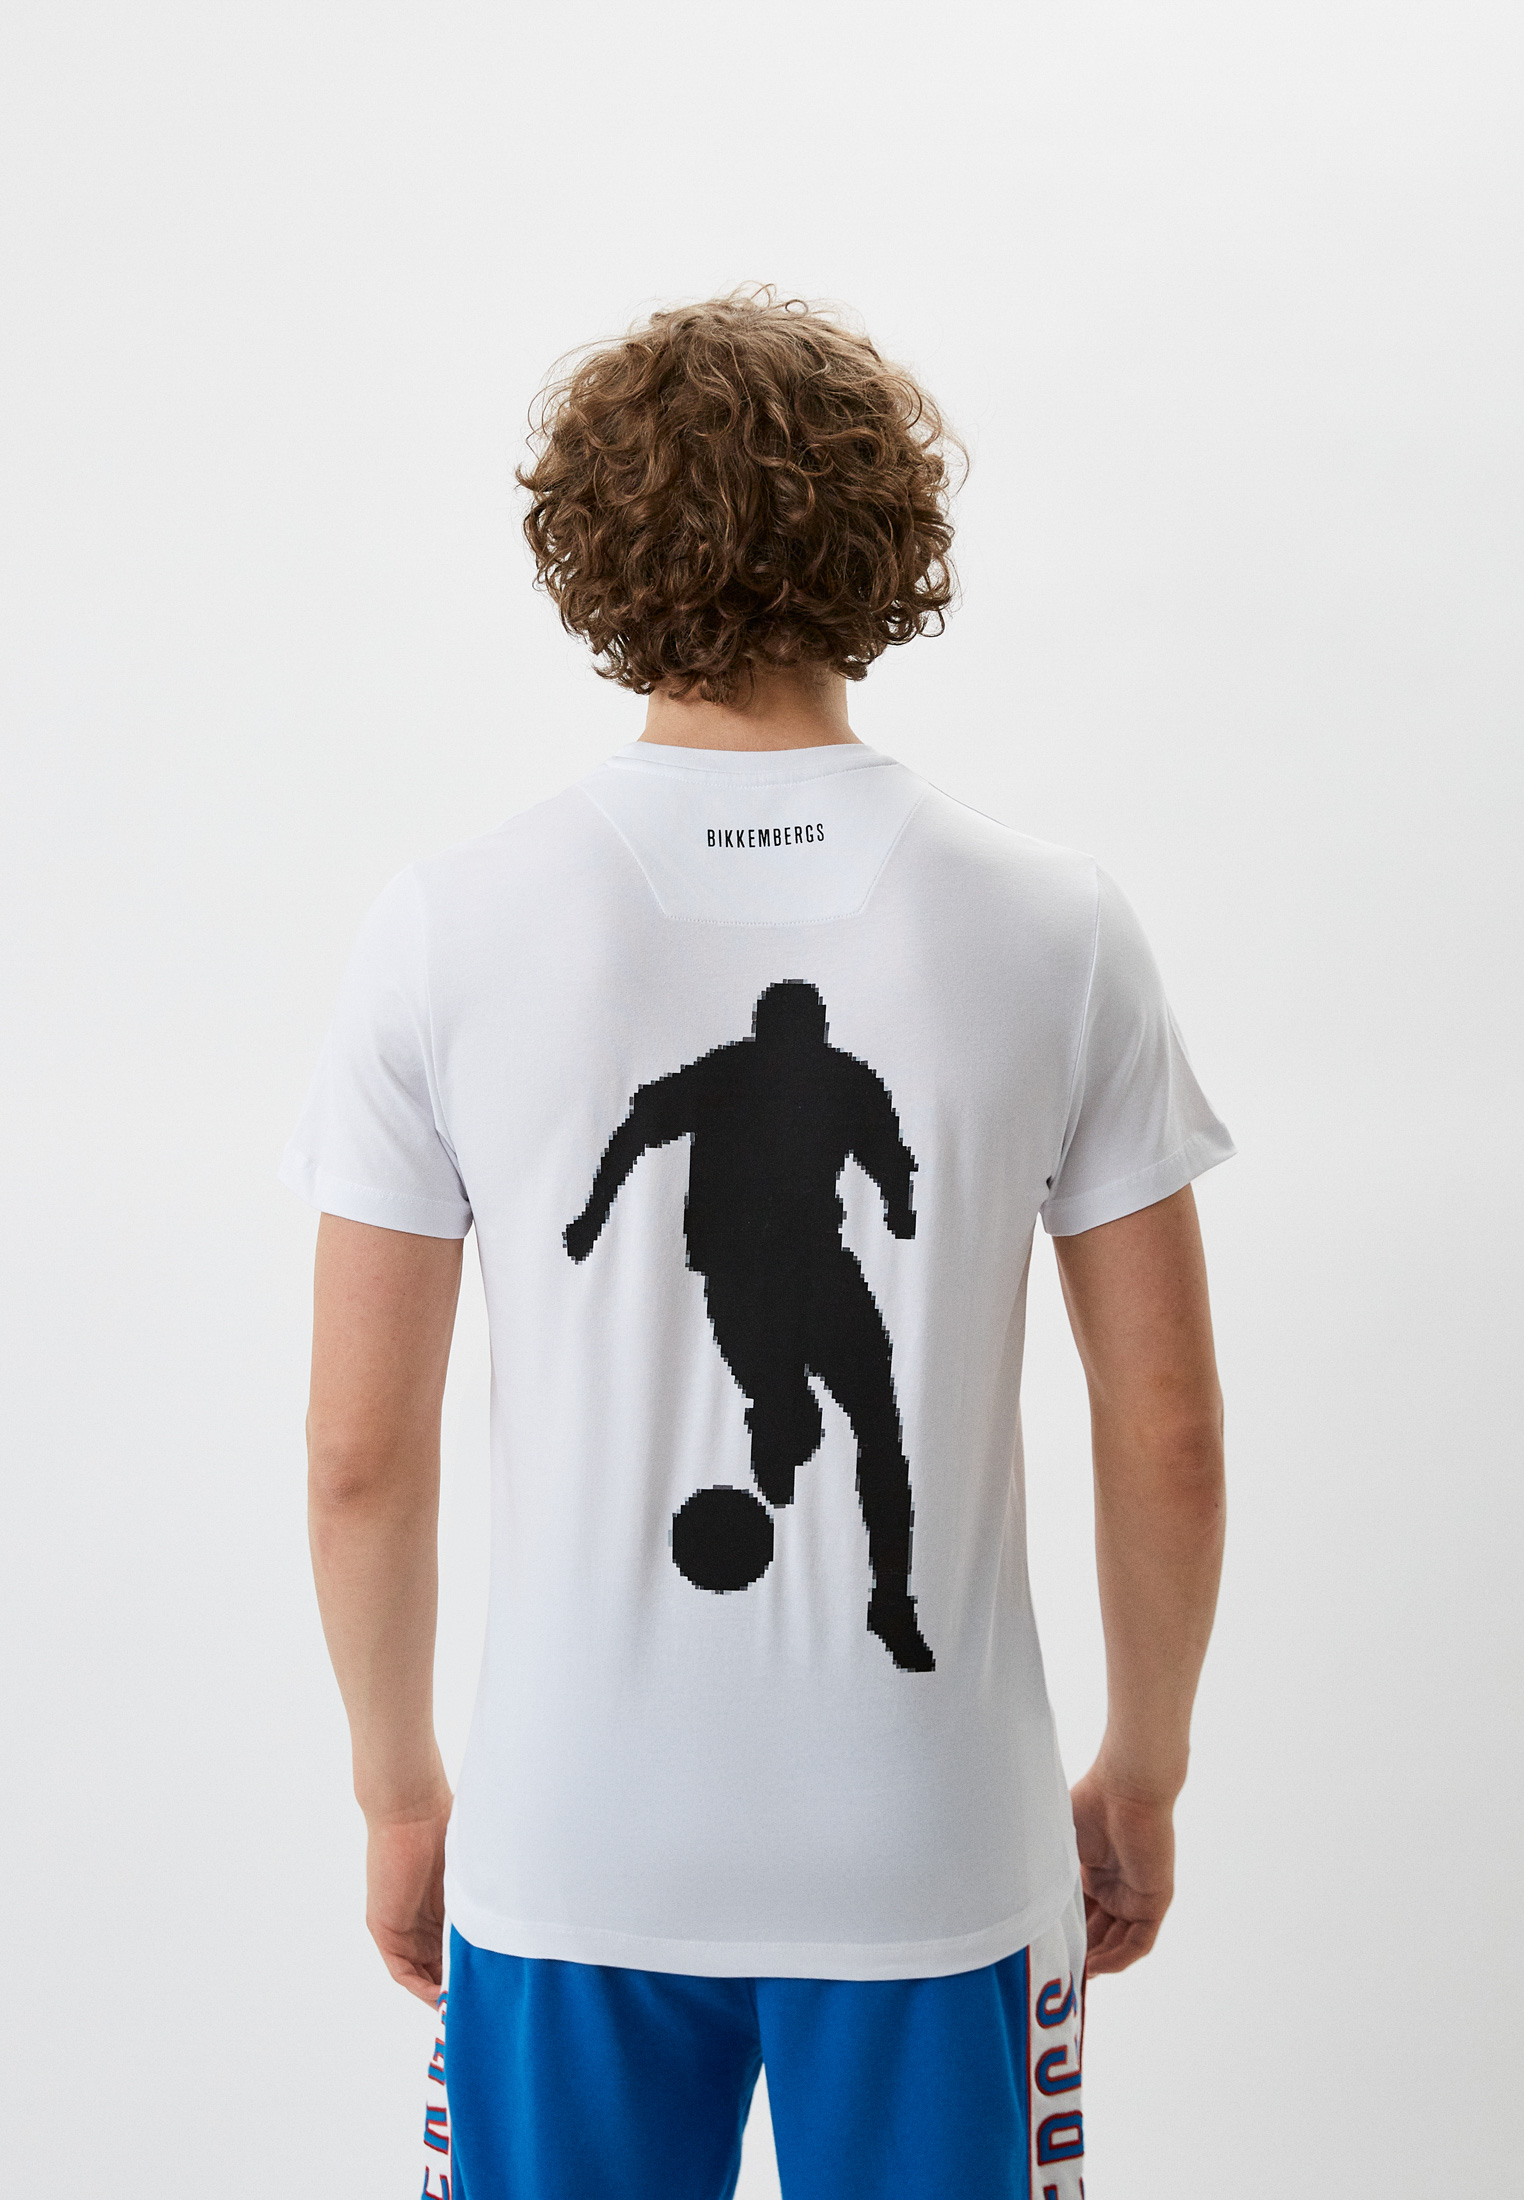 Мужская футболка Bikkembergs (Биккембергс) C 4 101 02 E 2231: изображение 3